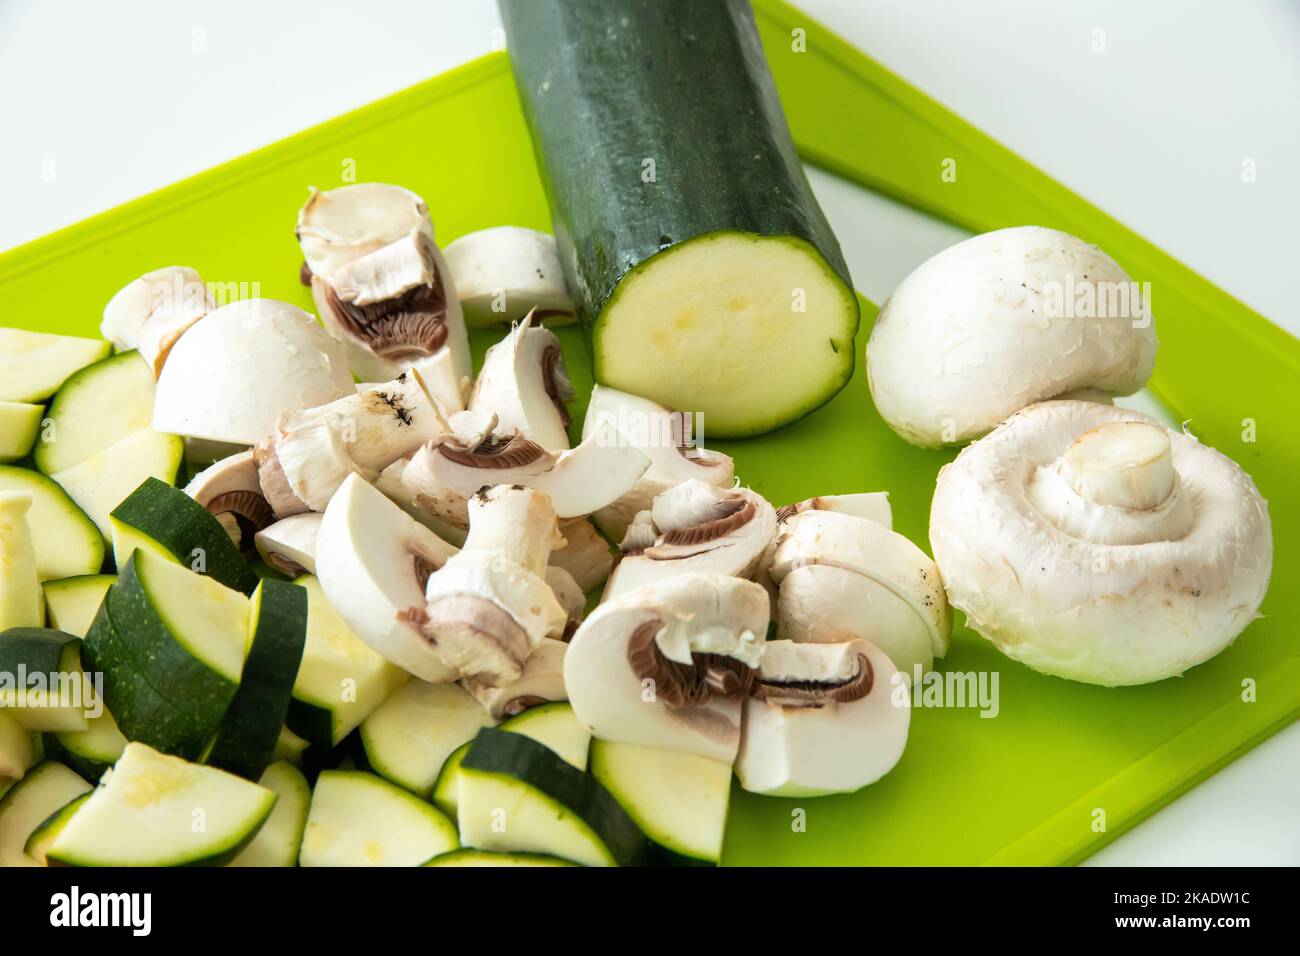 Une belle photo de courgettes hachées, et de champignons sur une planche de cuisine verte Banque D'Images